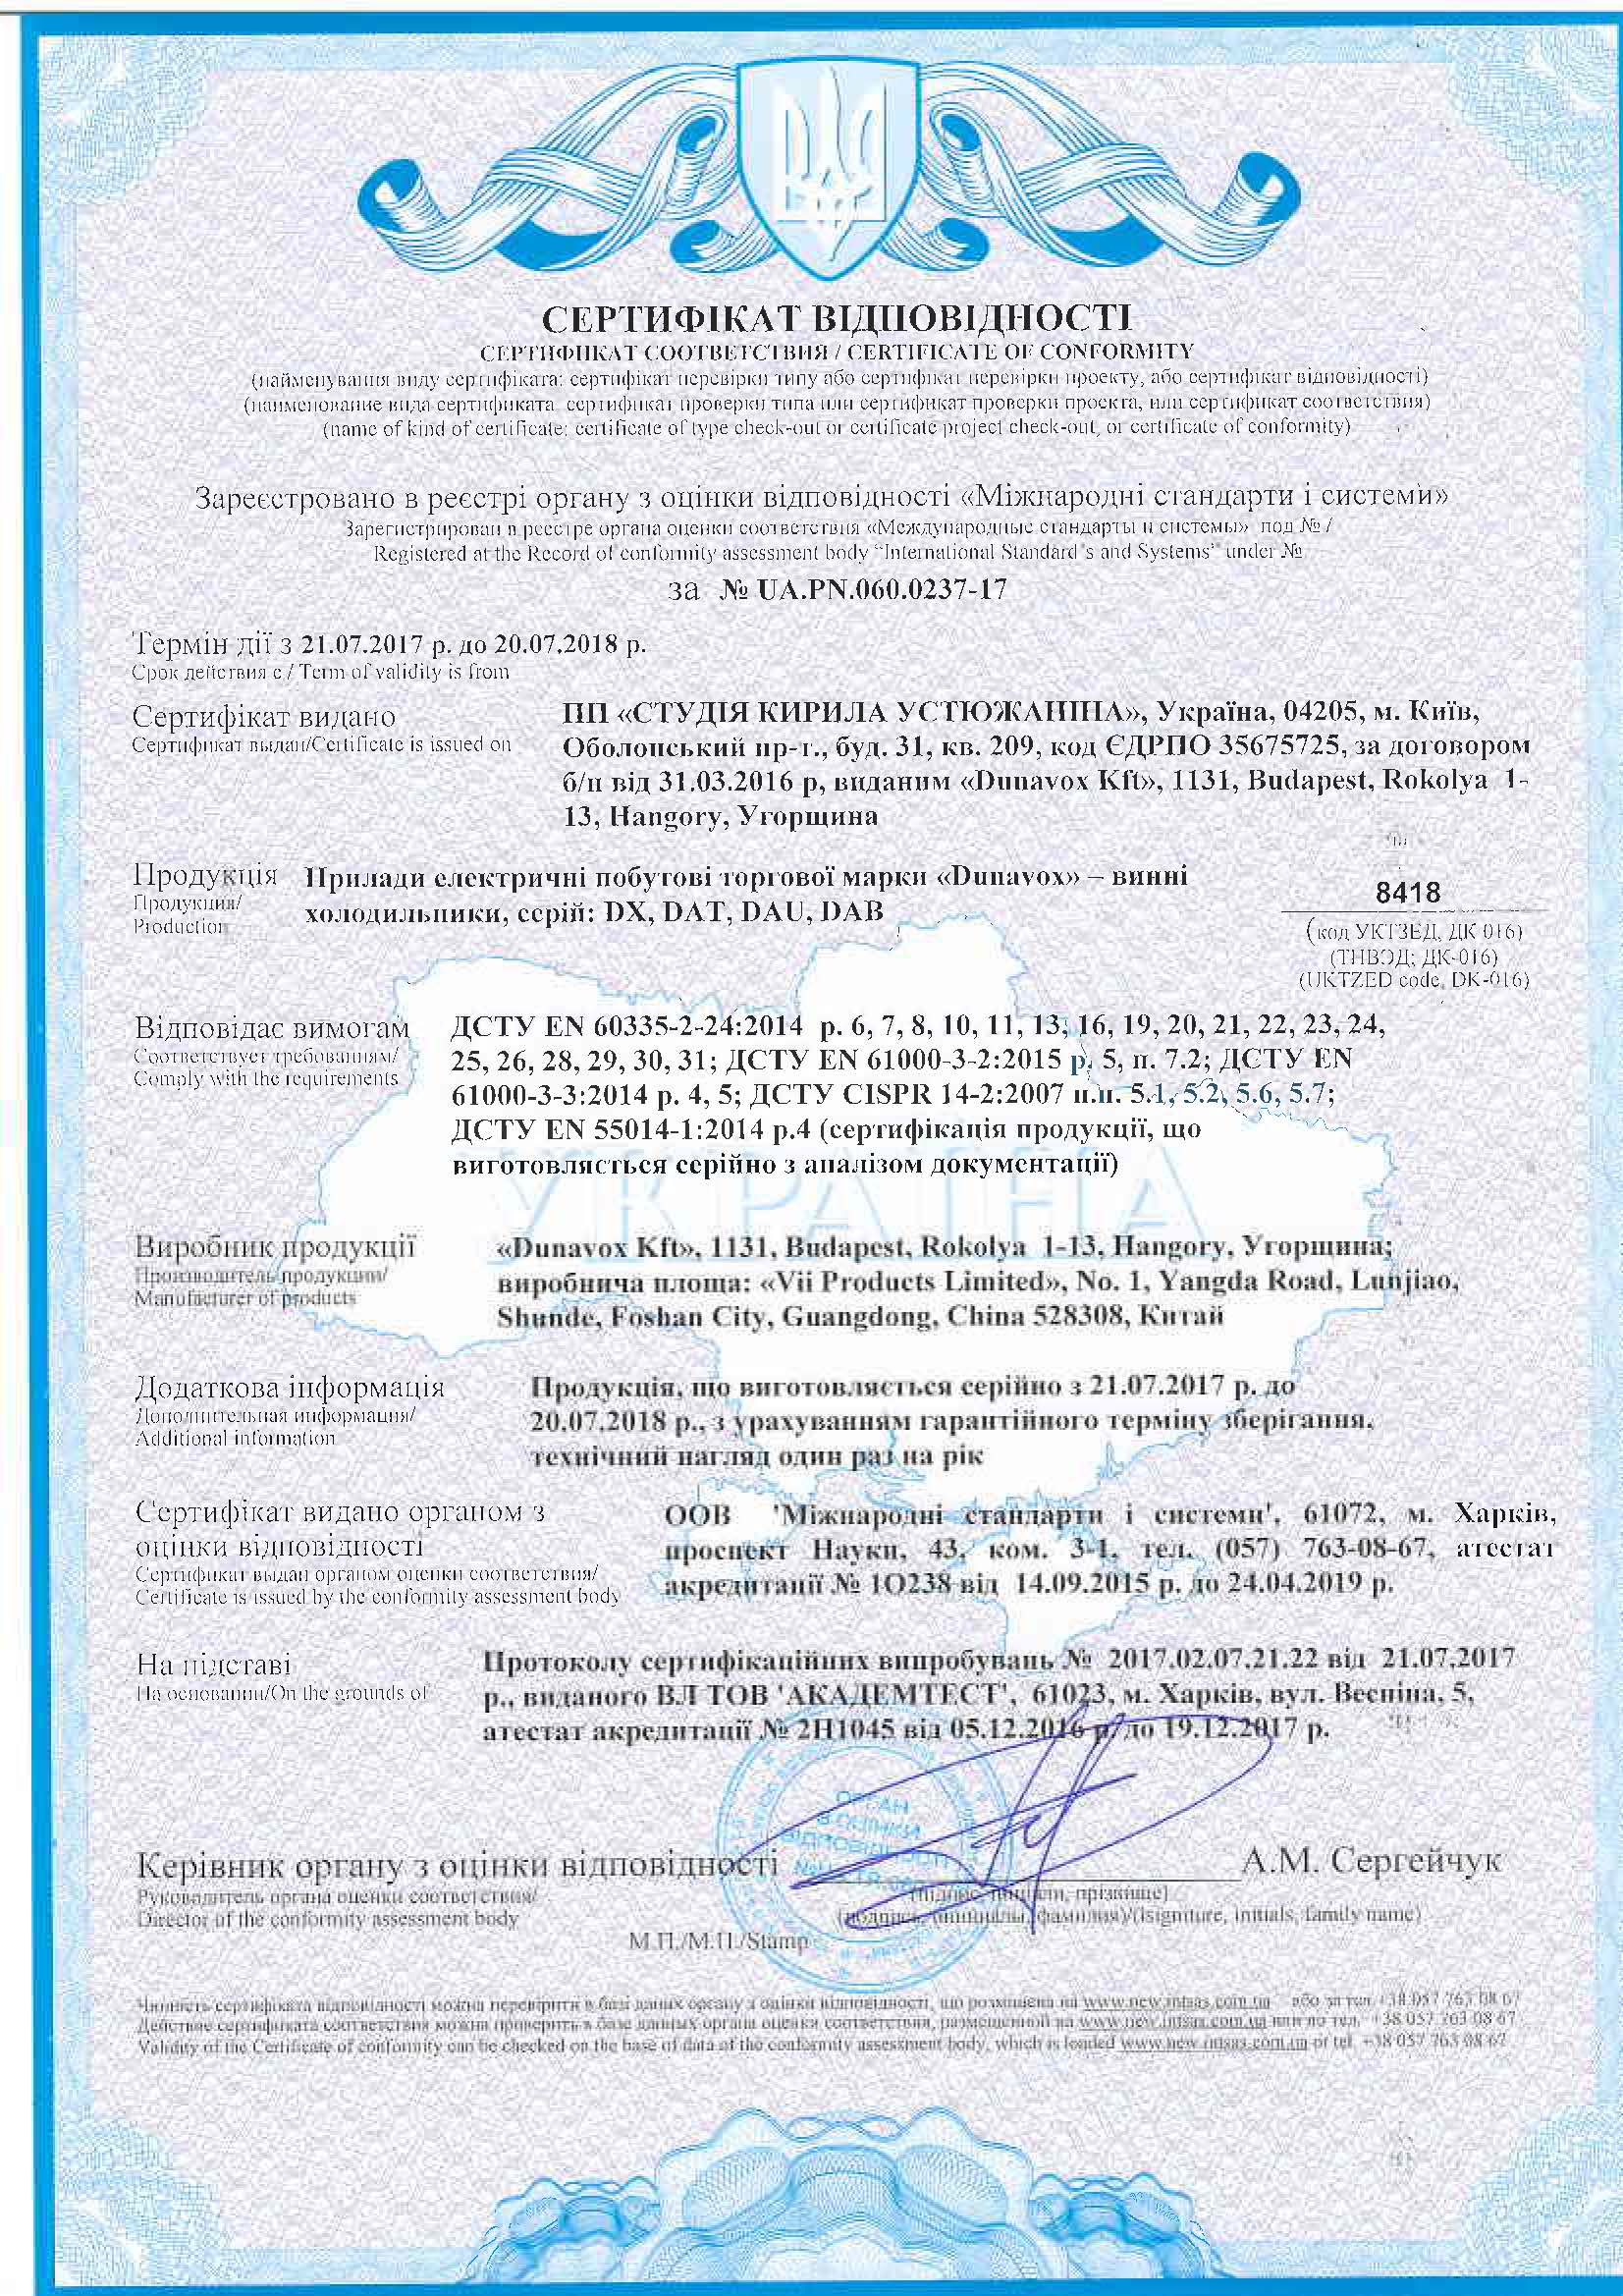 Винные холодильники DUNAVOX сертификат